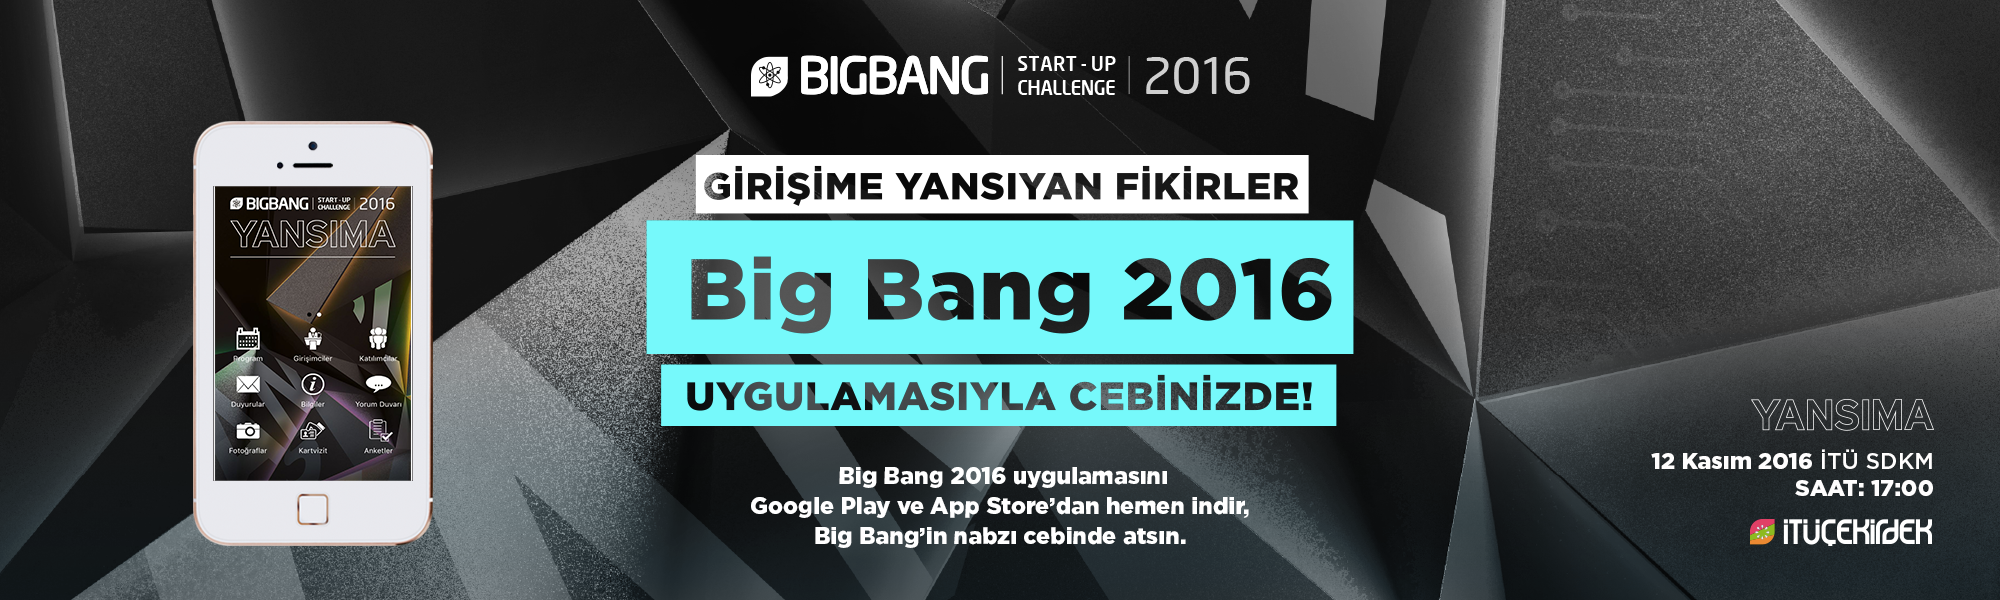 big bang 2016 mobi̇l uygulamasi çikti! 1